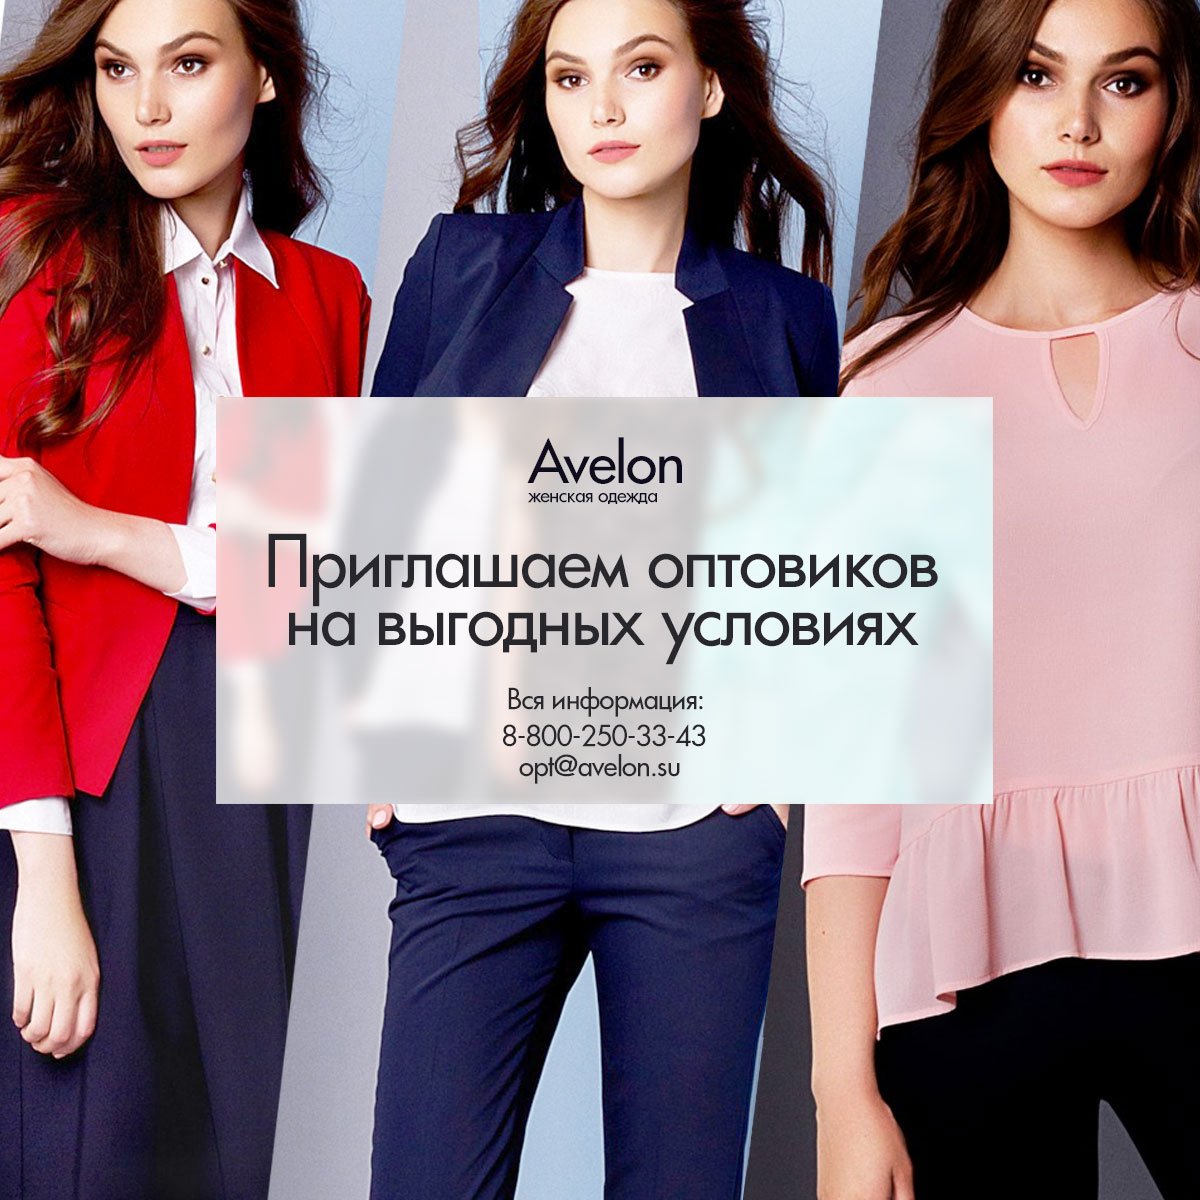 Avelon одежда